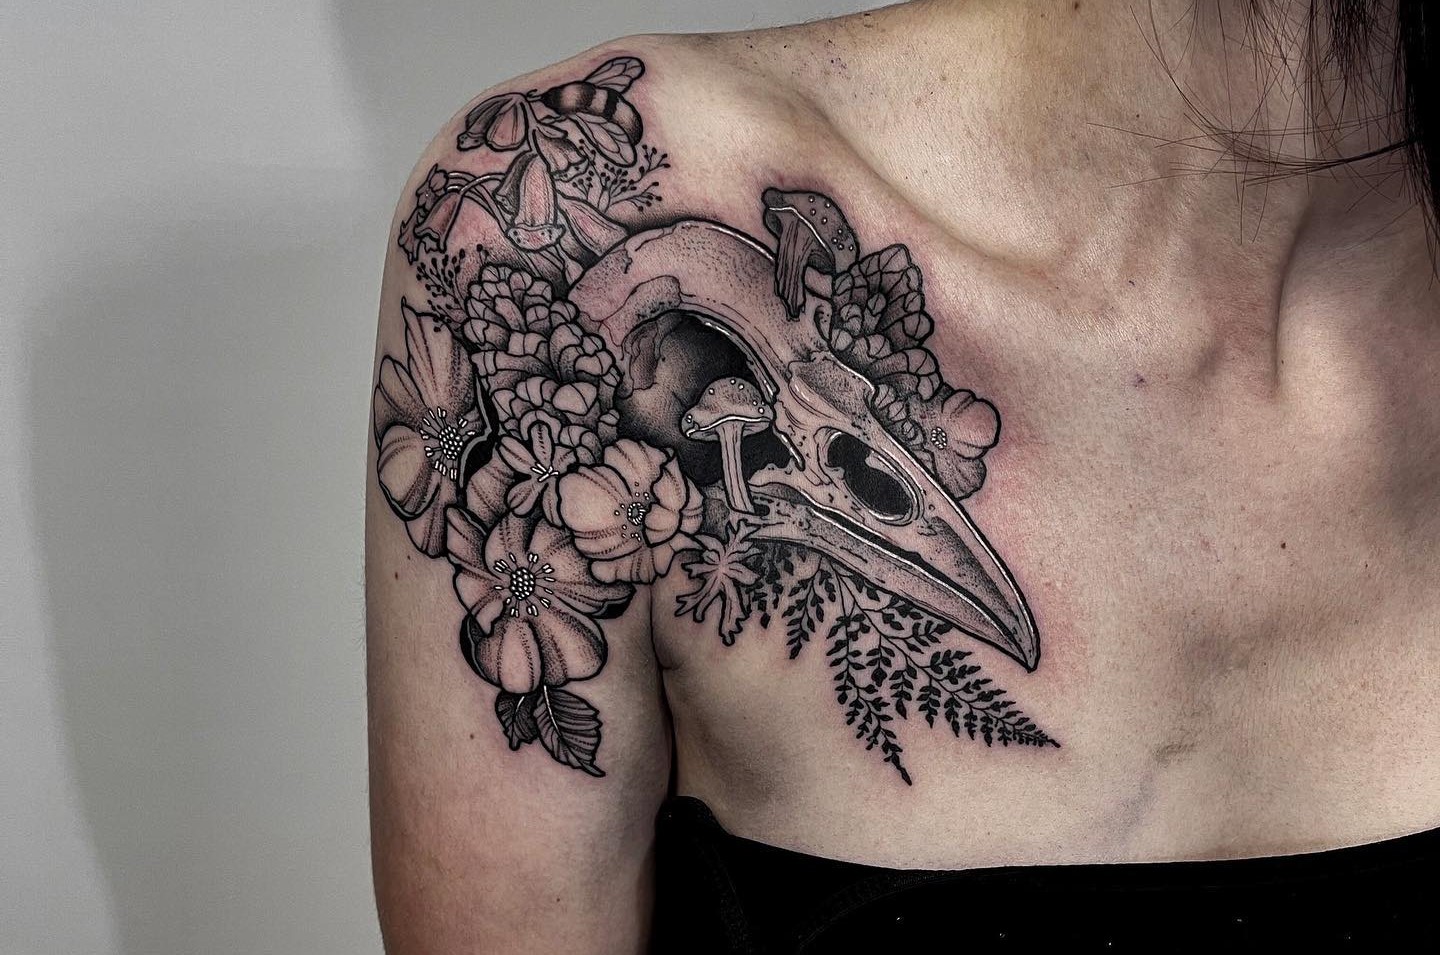 Bird skull tattoo meaning